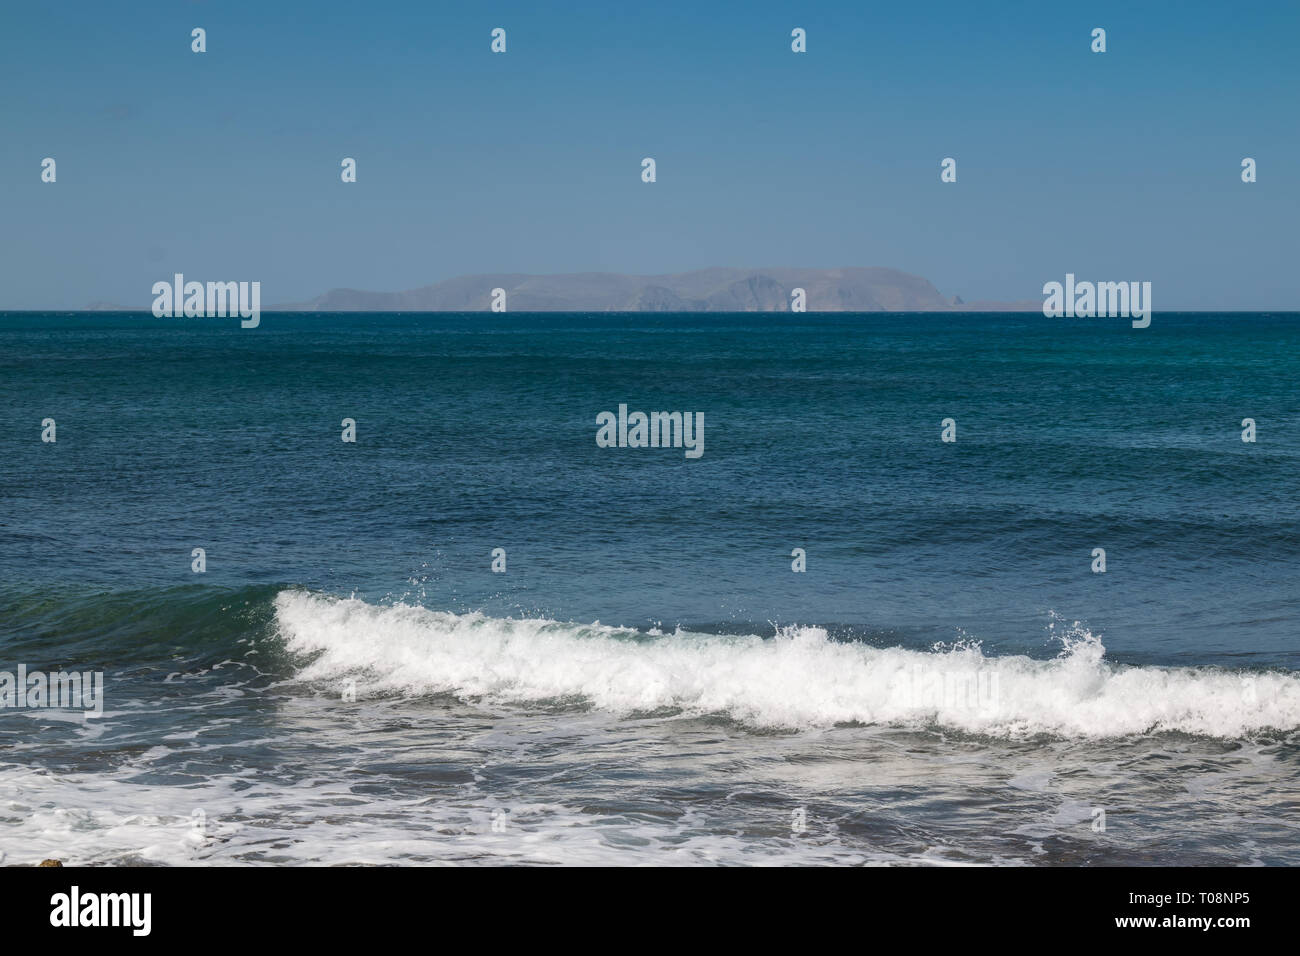 Marine: Türkis im ruhigen Wasser des Mittelmeers mit einer kleinen Küste Welle. Ganz im Hintergrund die Berge am Horizont. Blue Sky. Gouves, Kreta Stockfoto